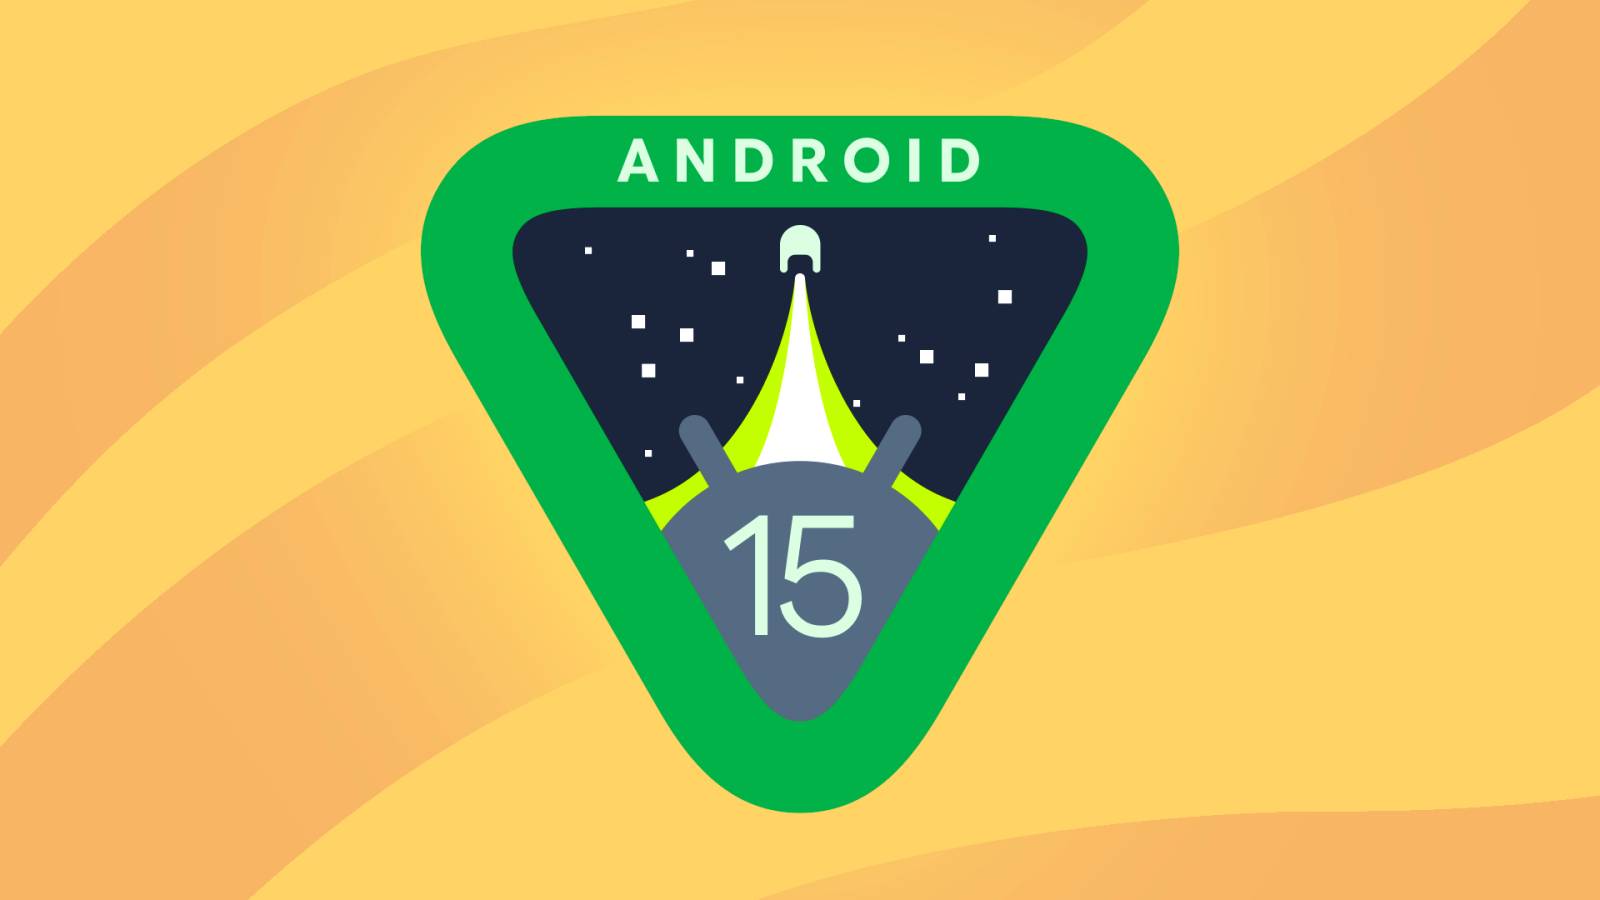 Android 15 bringt Google eine GROSSE Veränderung für viele Telefone